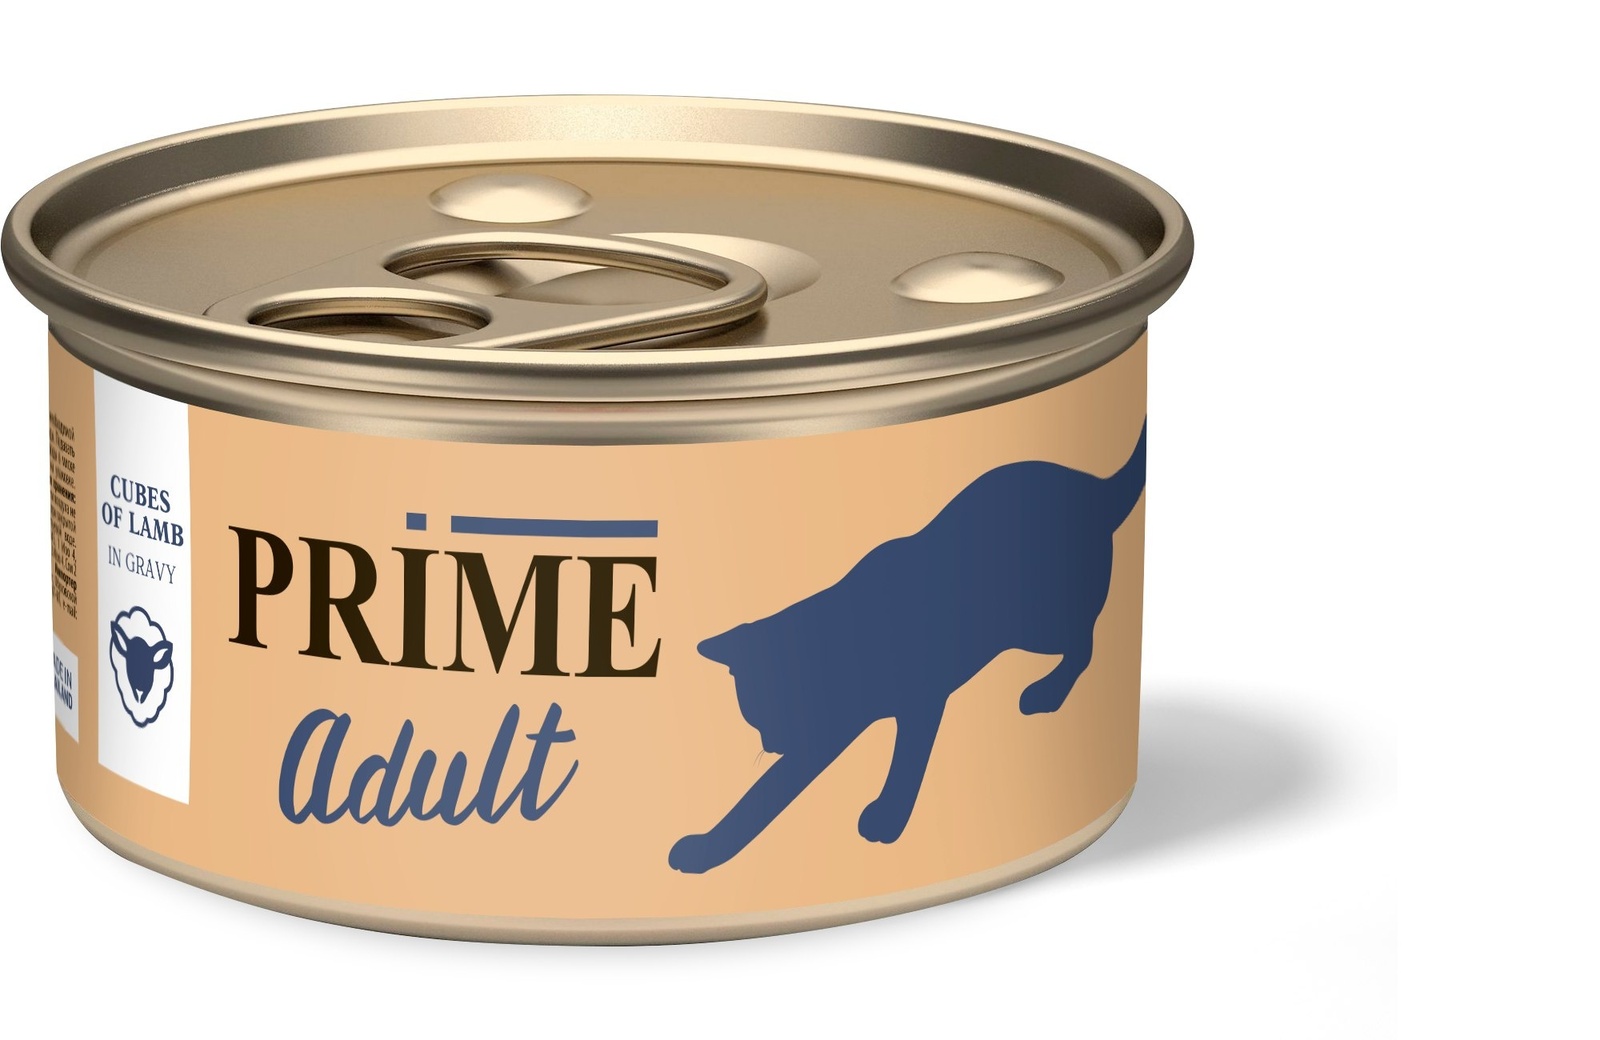 Prime консервы для кошек кусочки в соусе ягненок (75 г) Prime консервы для кошек кусочки в соусе ягненок (75 г) - фото 1